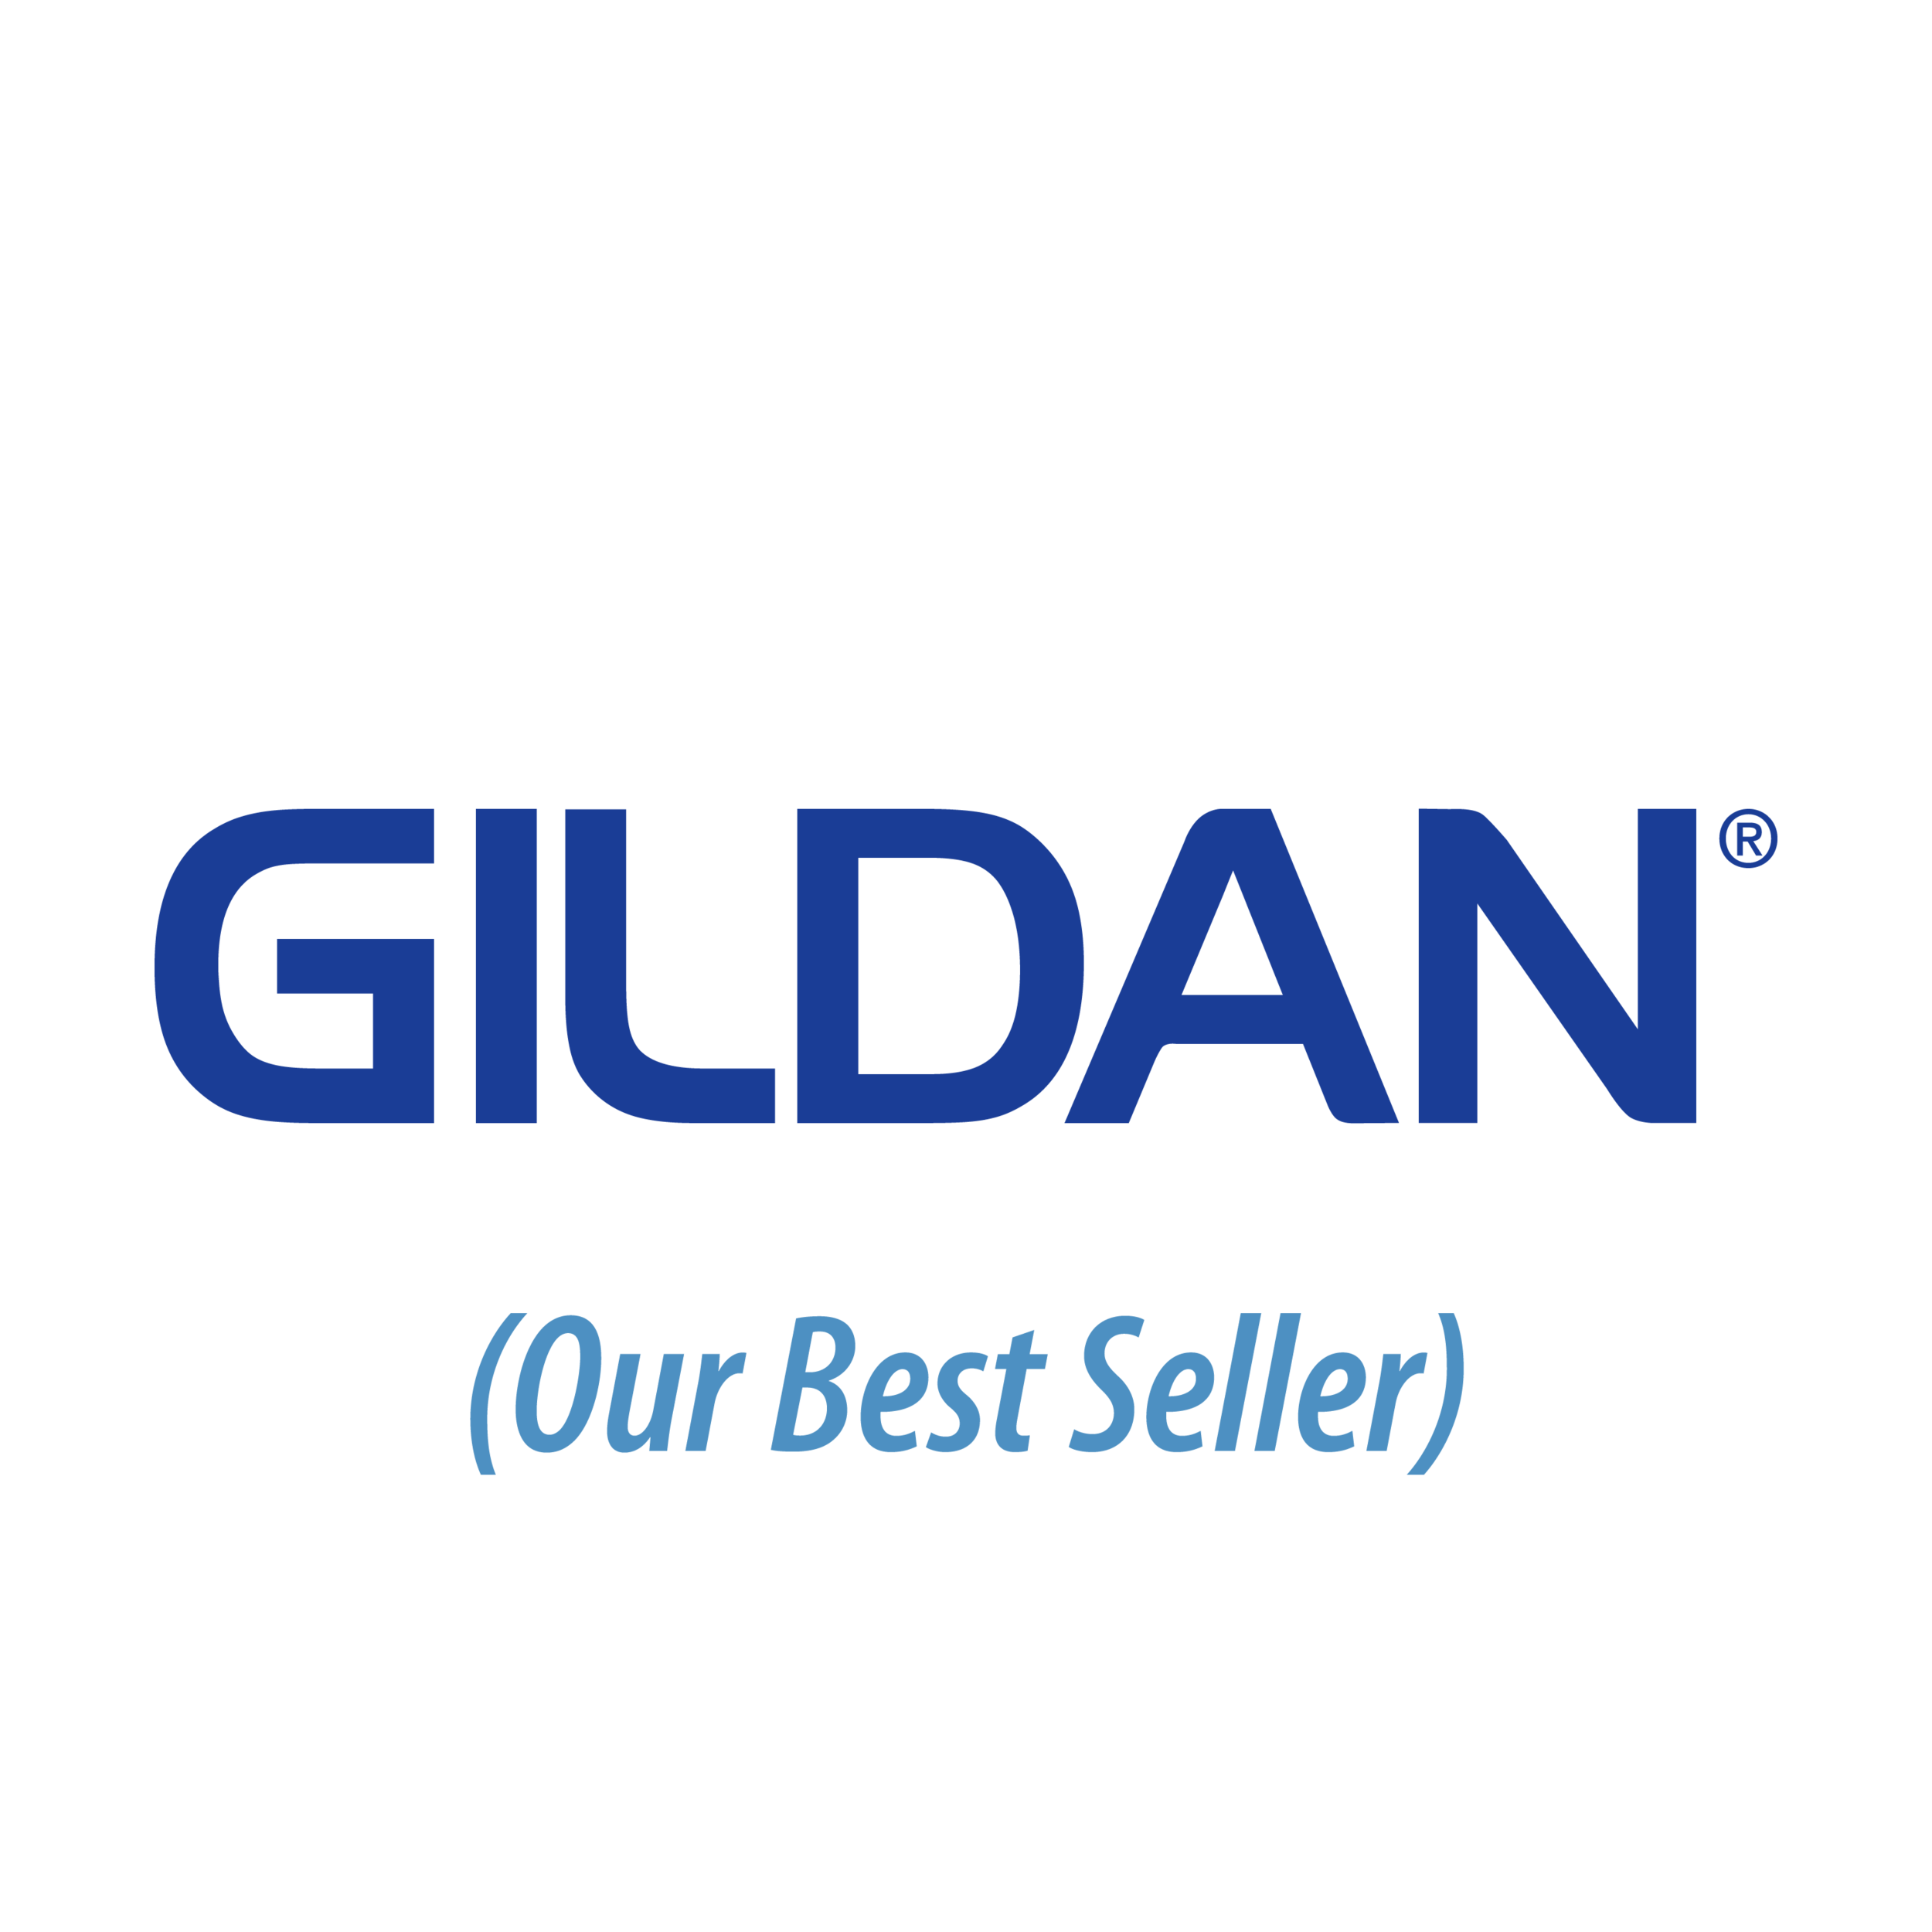 Gildan_BestSellers.png